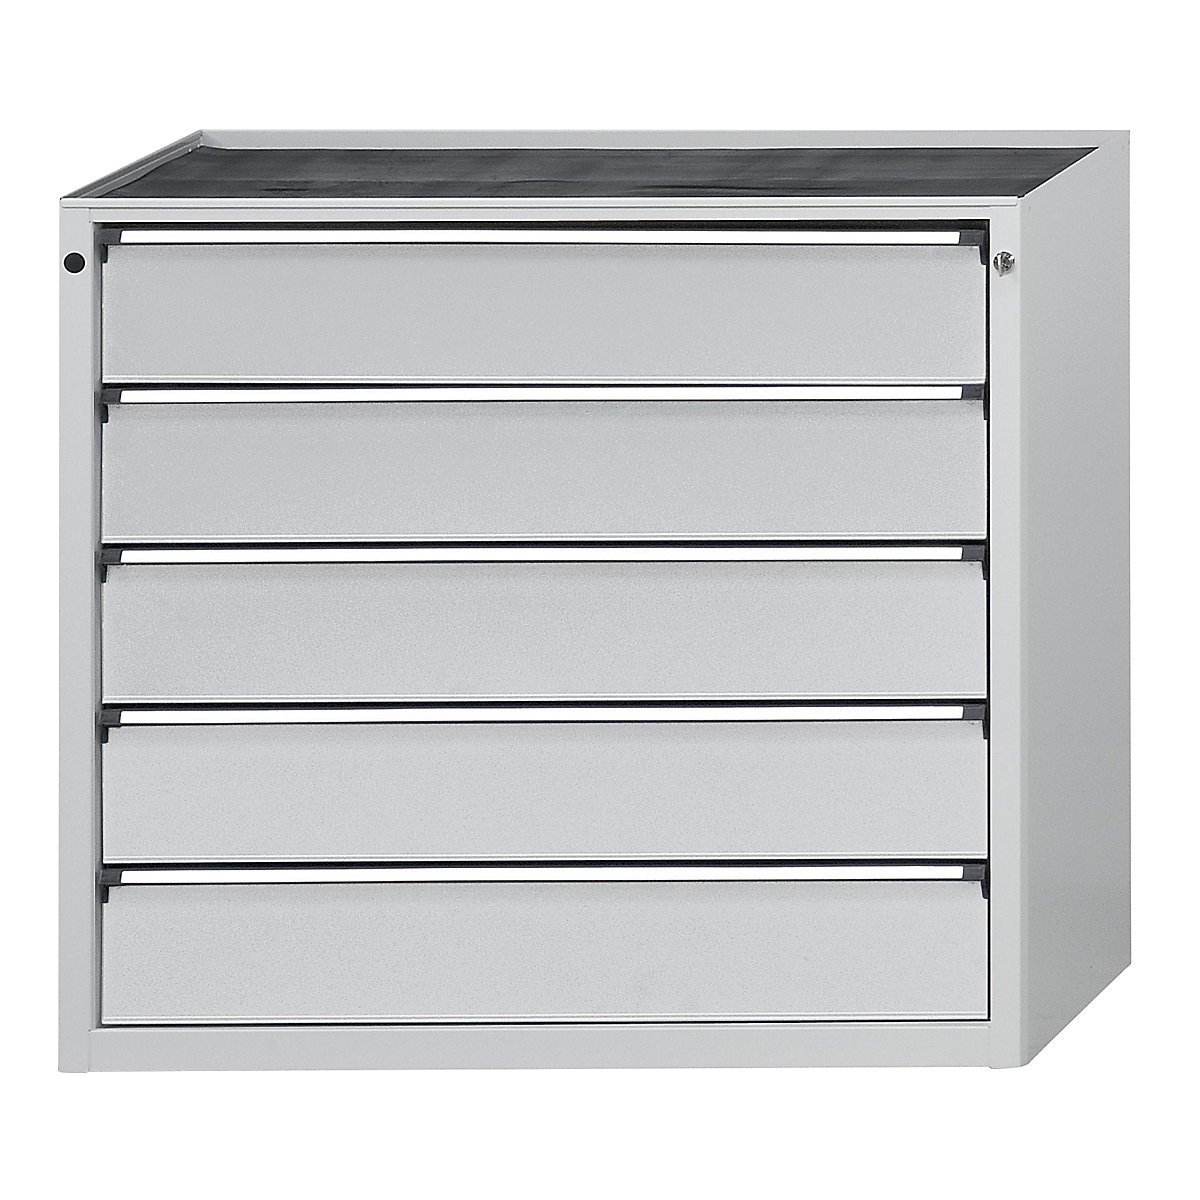 ANKE – Armoire à tiroirs, l x p 1060 x 675 mm, 5 tiroirs, hauteur 980 mm, façade gris clair